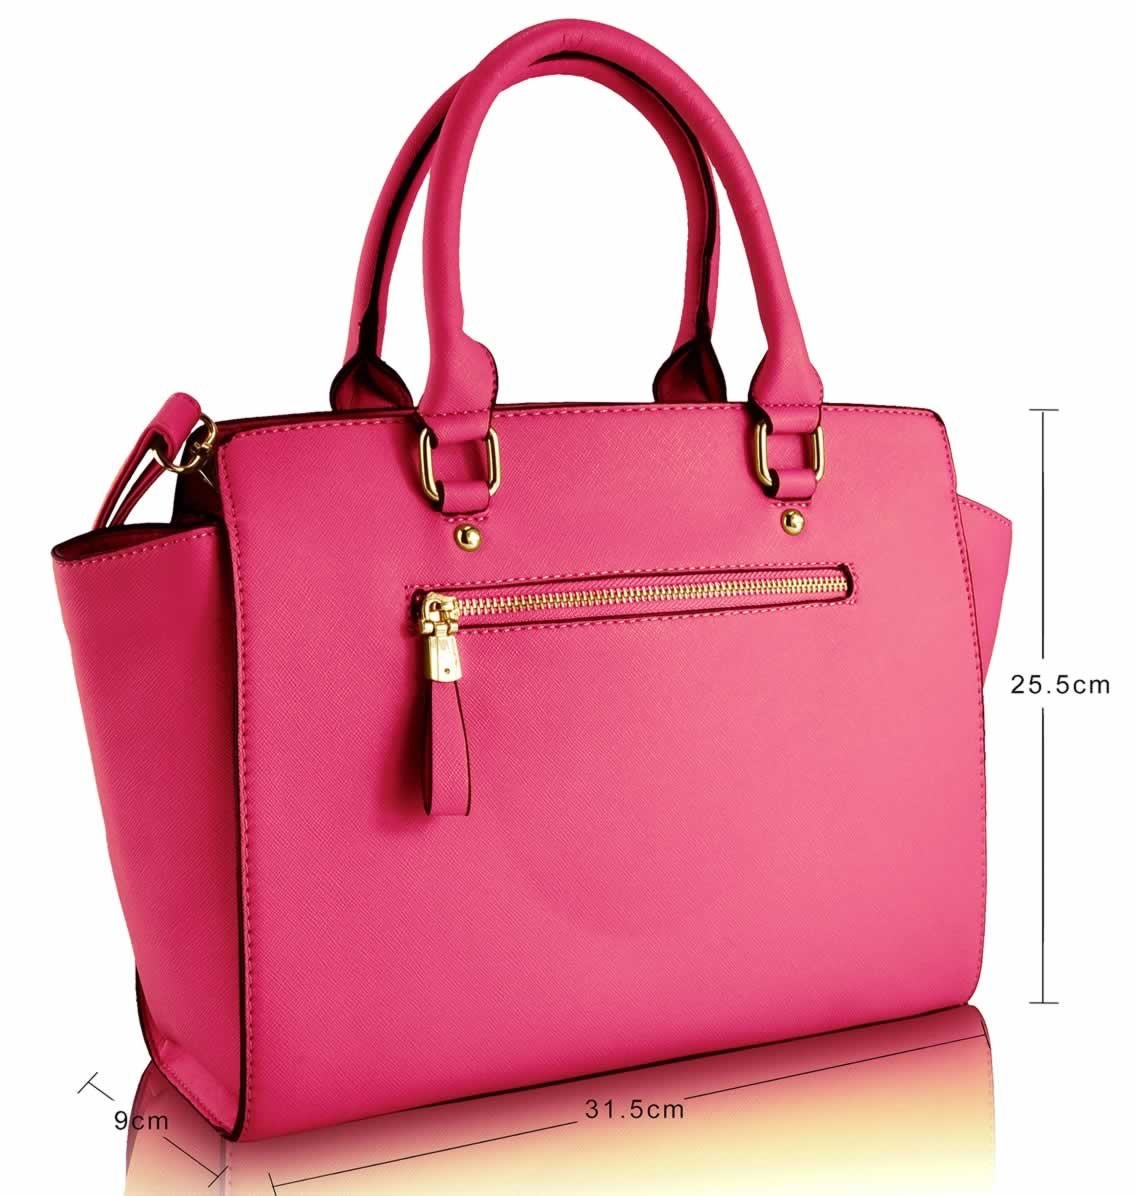 Wholesale Pink GrabTote Handbag